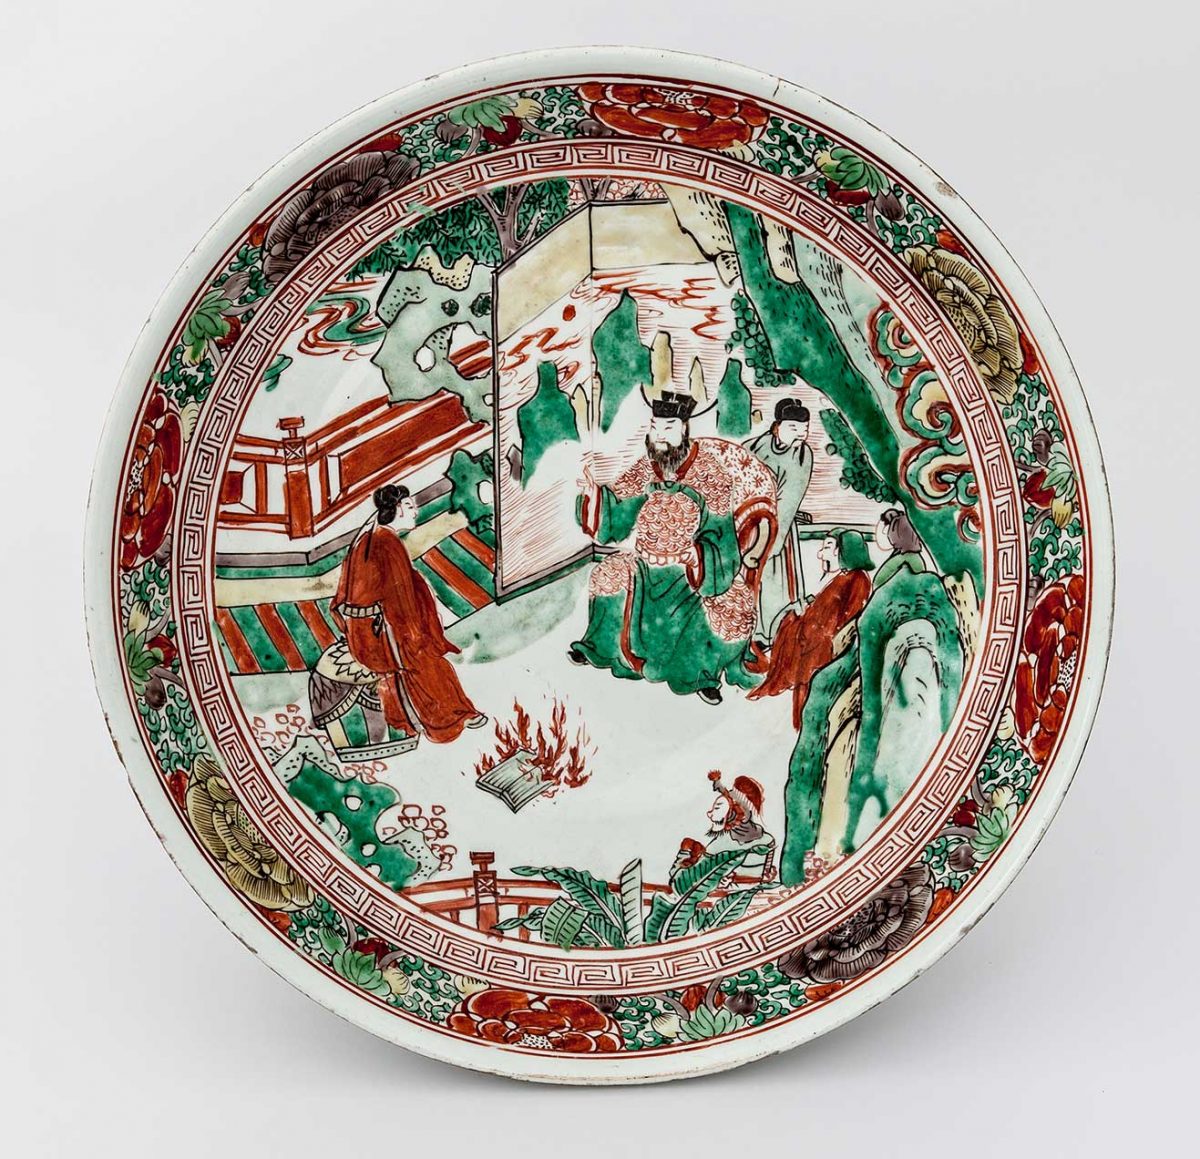 Πιάτο. Πορσελάνη με διακόσμηση σε σμάλτα. Κίνα, επαρχία Jiangxi, πόλη Jingdezhen. Πρώιμη δυναστεία Qing, 17oς αι. μ.Χ. Δωρεά Γεώργιου Ευμορφόπουλου (2701).